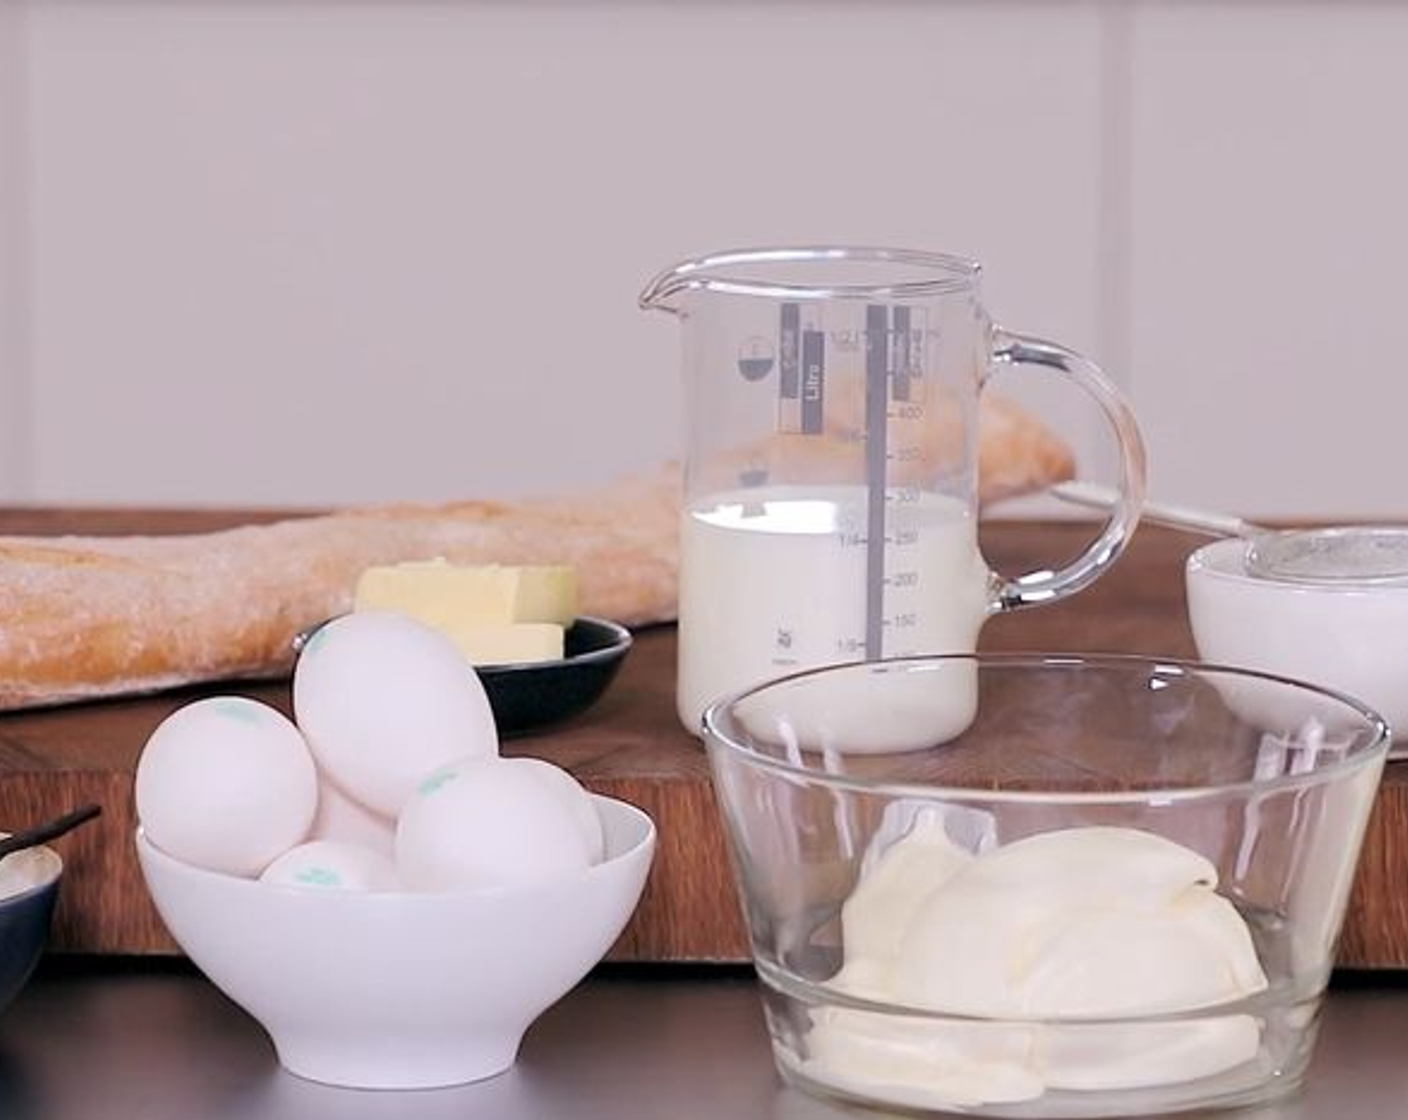 Schritt 1 Form grosszügig mit Butter (2 Esslöffel) einfetten. Dann die Vanilleschote (1) auskratzen. Eier (6), Zucker (200 g), Milch (250 ml), Rahm (500 ml), Vollrahm (250 ml) und Vanillemark gründlich mit einem Pürierstab vermischen.